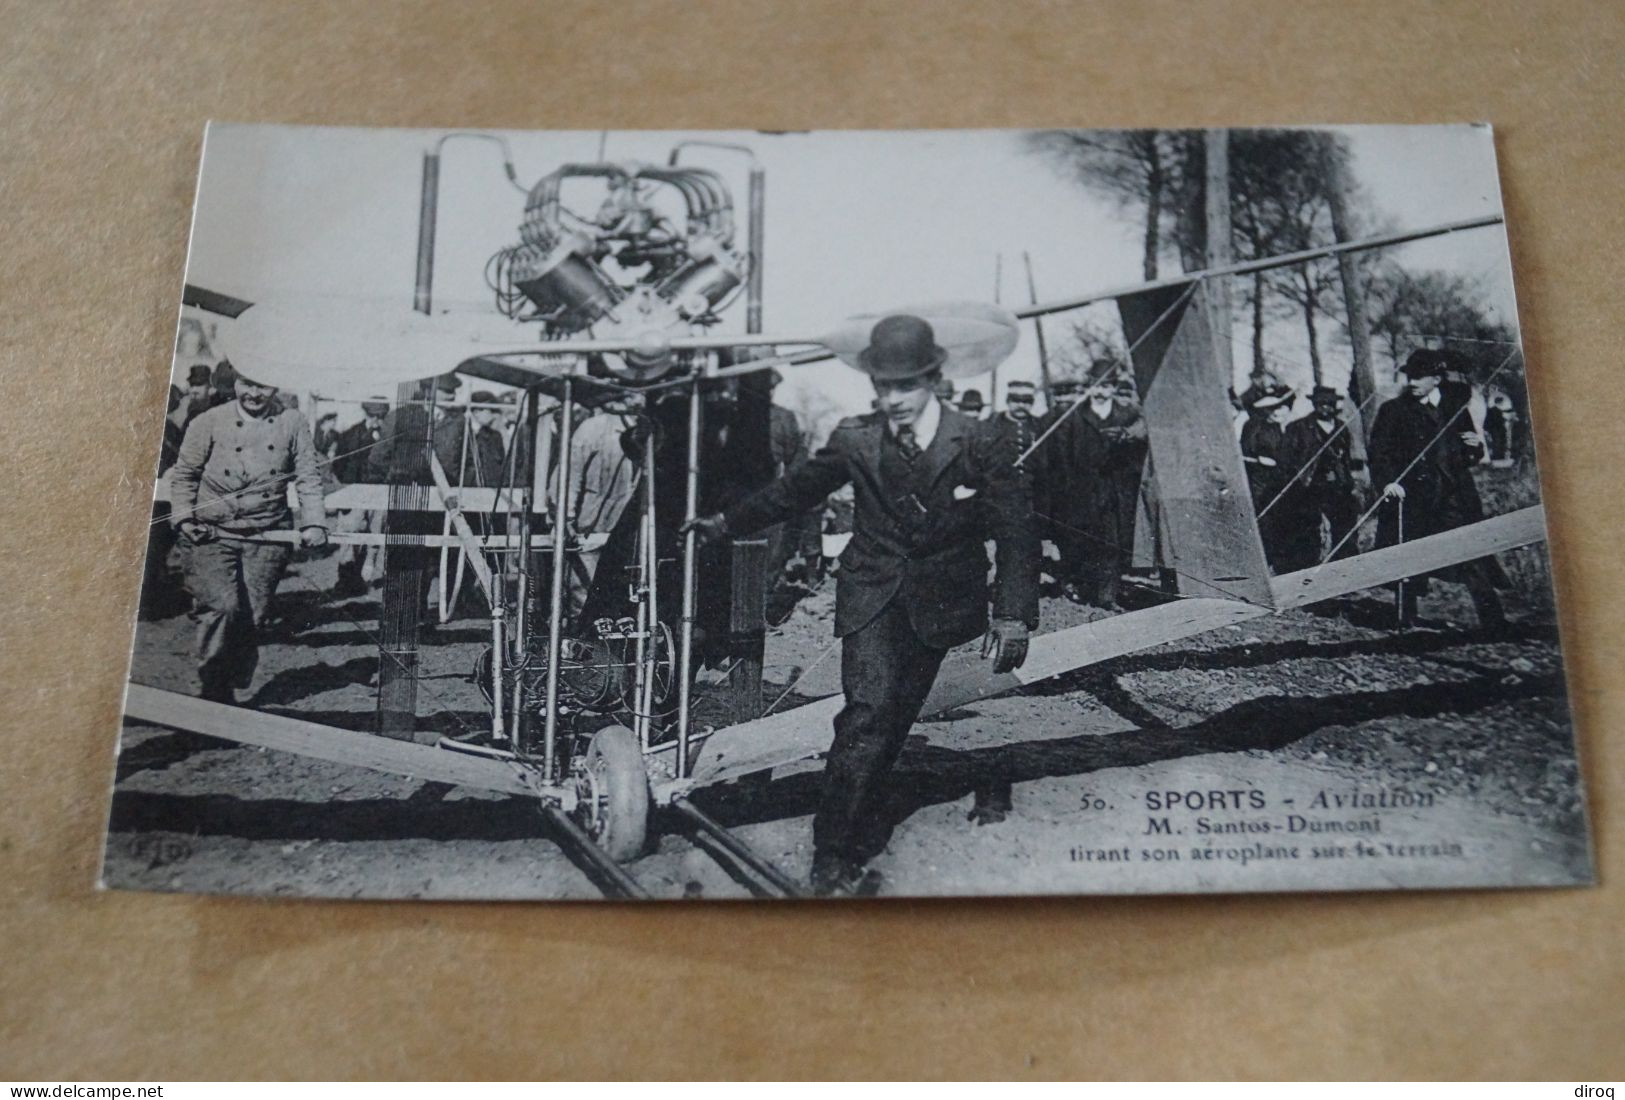 Aviation ,aviateur,M. Santos - Dumont Tirant Son Aéroplane, Ancienne Carte Postale,collection - Aviatori